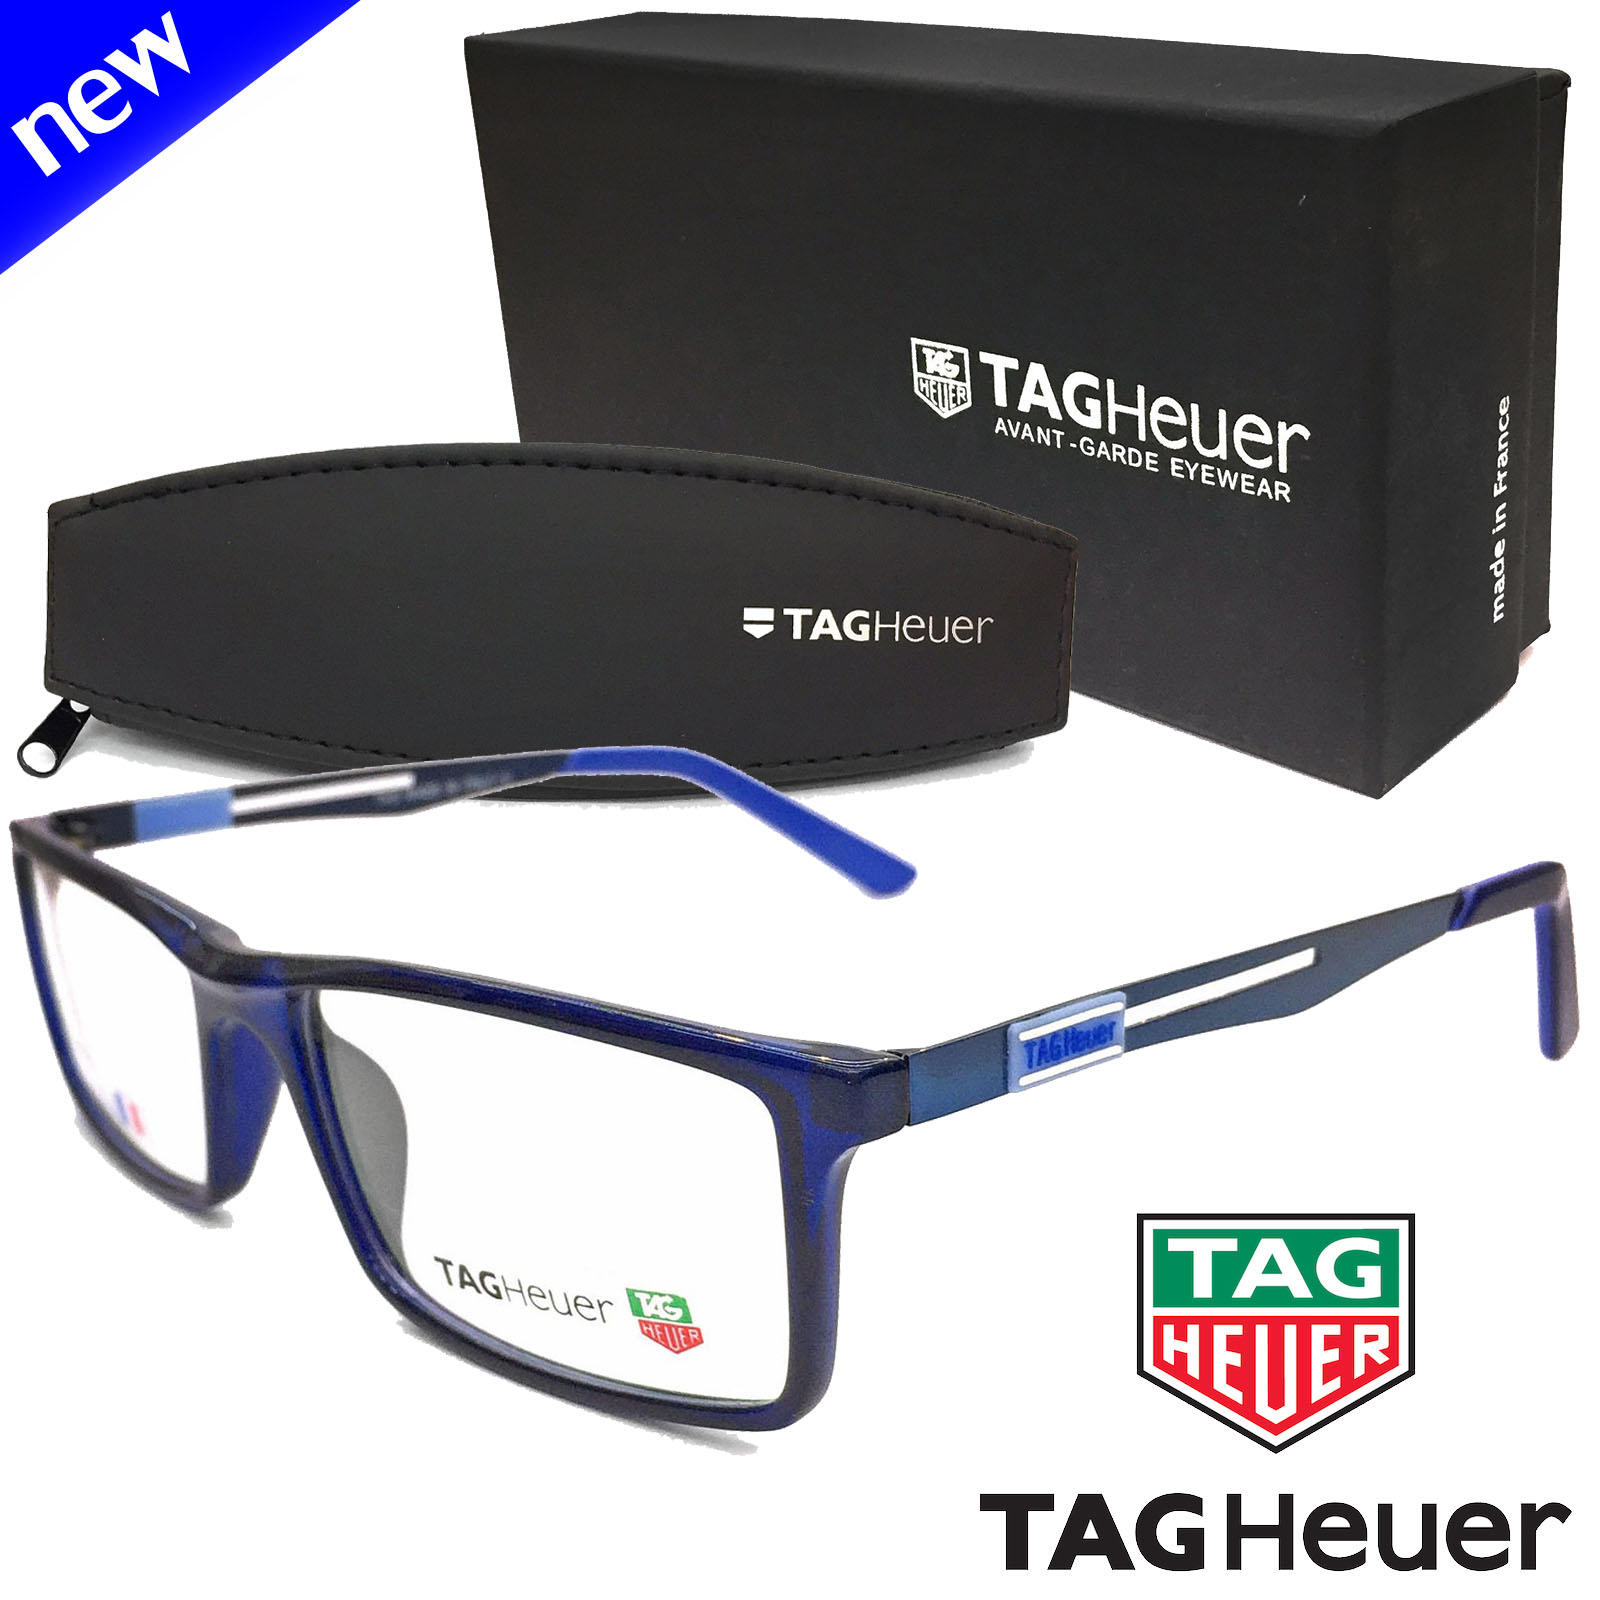 แว่นตา Fashion รุ่น Tag heuer 0513 กรอบแว่นตา สำหรับตัดเลนส์ กรอบเต็ม แว่นแฟชั่น ชาย หญิง ทรงสปอร์ต sport วัสดุ พลาสติก PC เกรดA ขาข้อต่อ รับตัดเลนส์